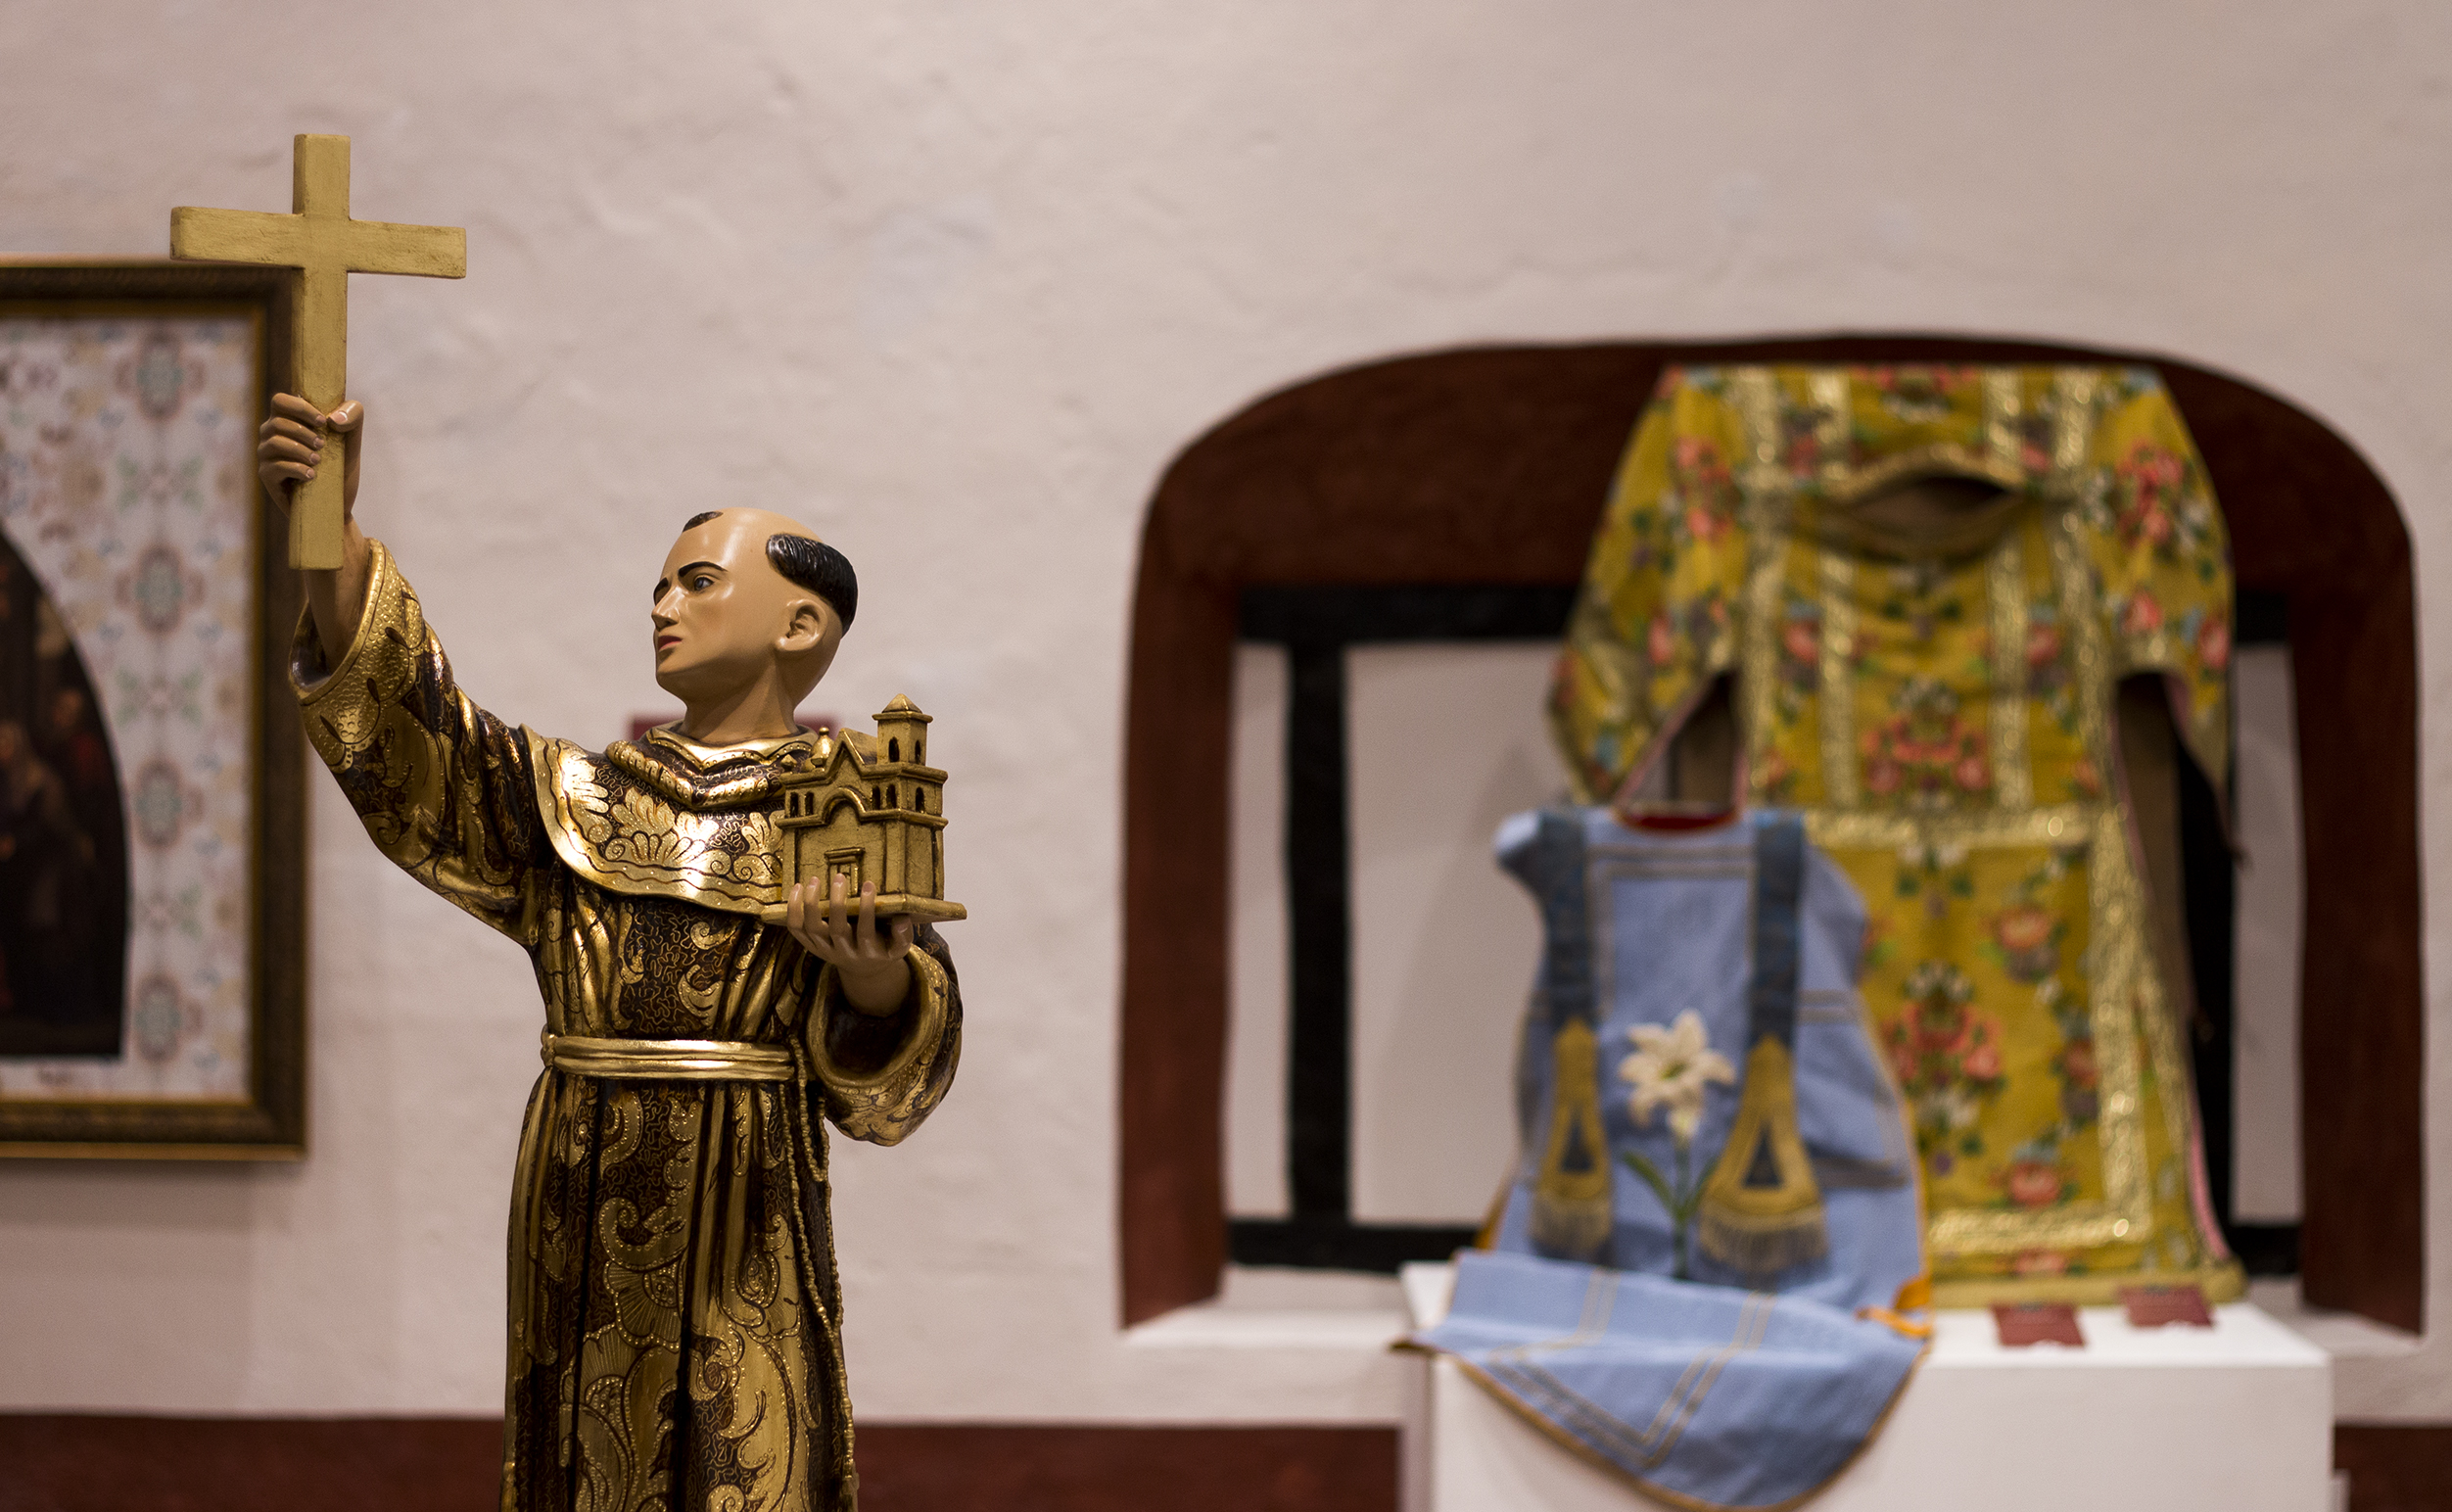  Museo de Arte Sacro inaugura su primera exposición permanente